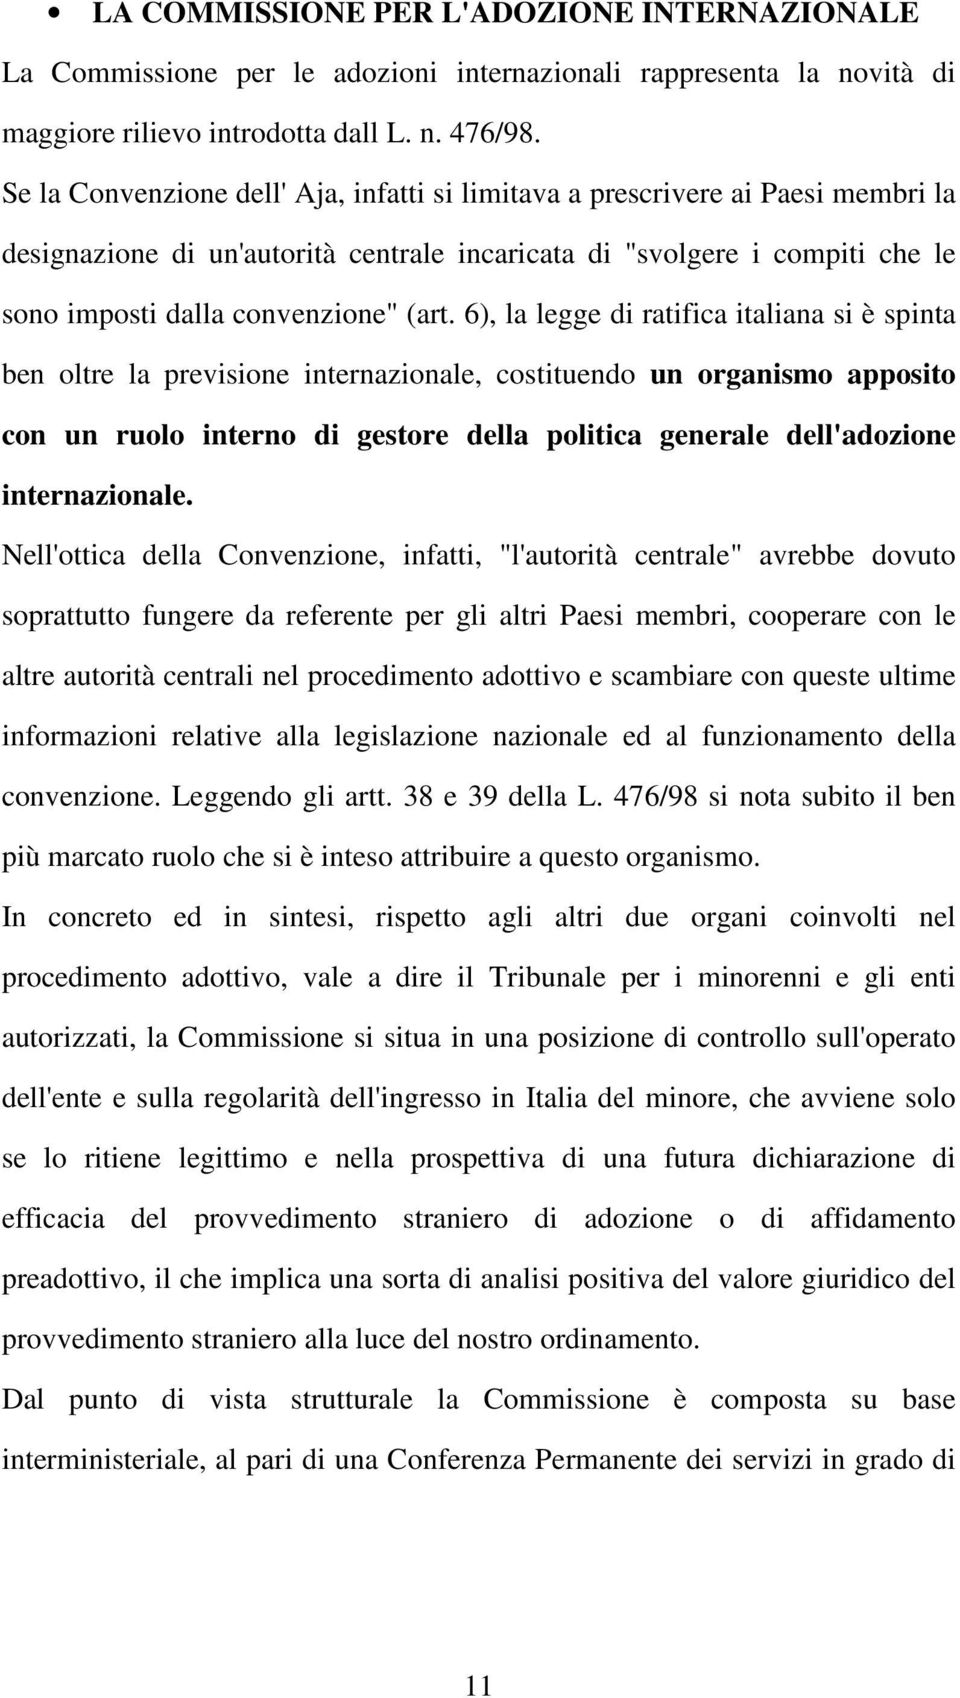 6), la legge di ratifica italiana si è spinta ben oltre la previsione internazionale, costituendo un organismo apposito con un ruolo interno di gestore della politica generale dell'adozione